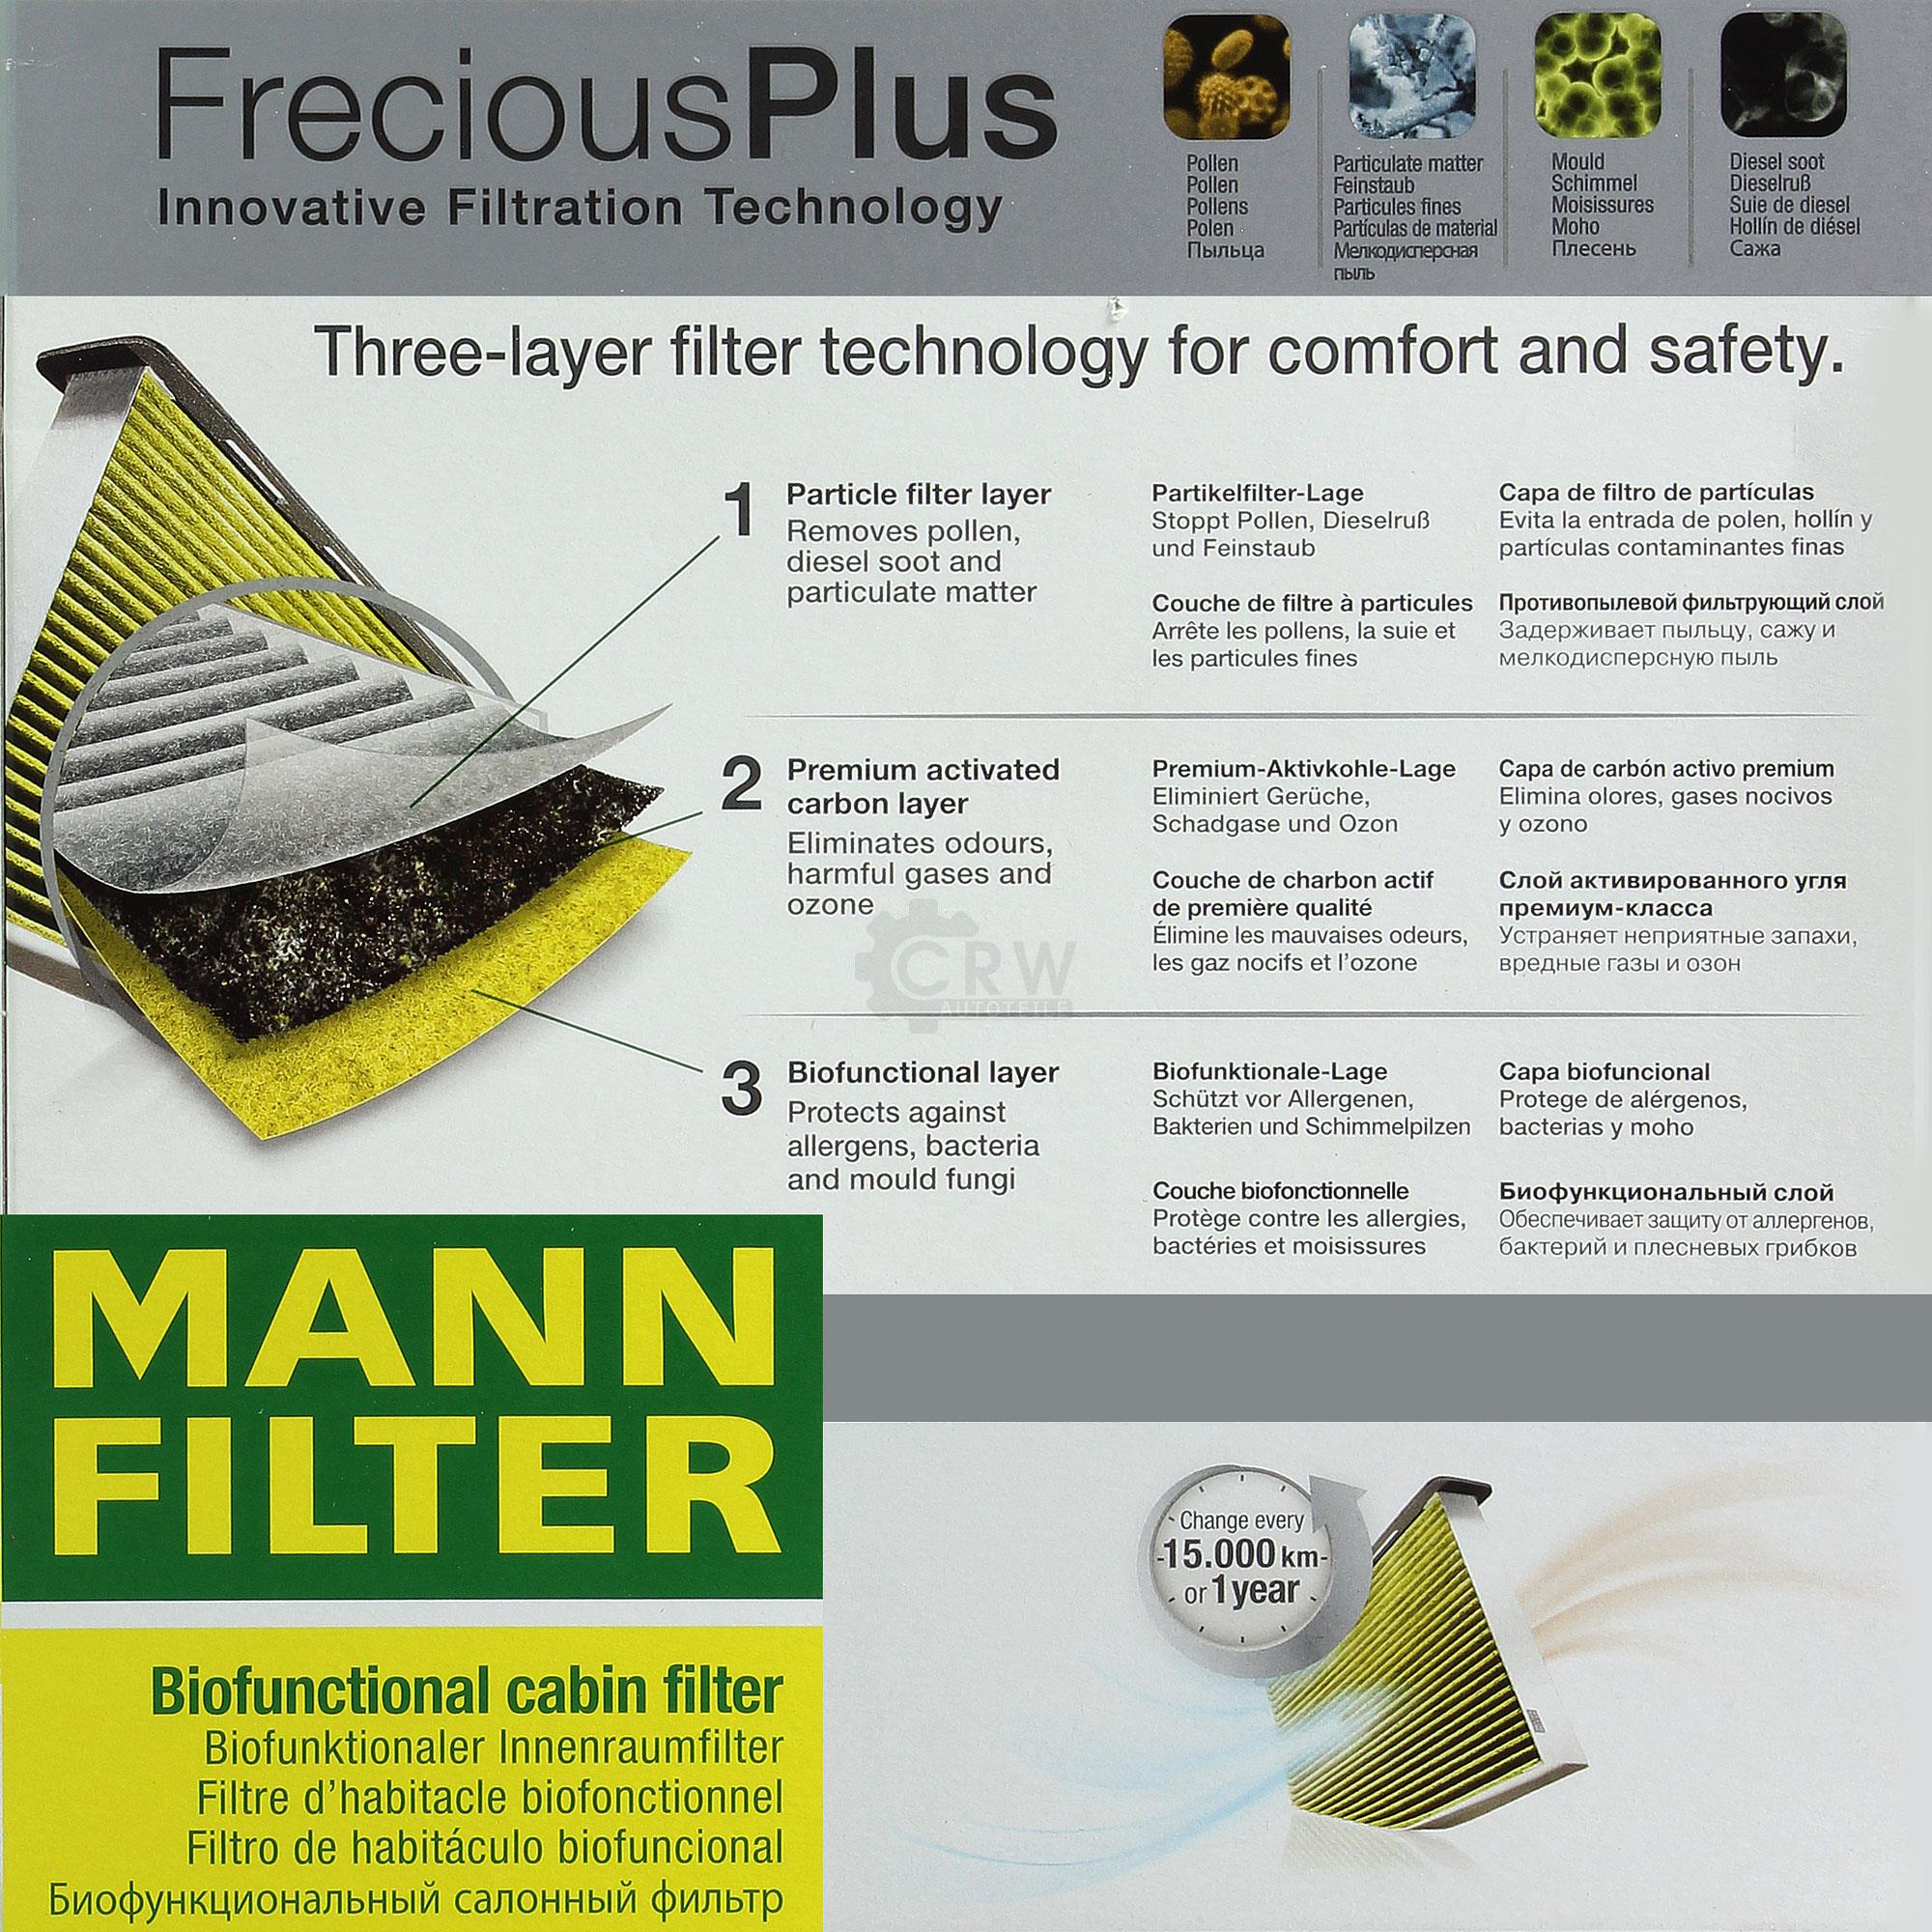 MANN-Filter Innenraumfilter Biofunctional für Allergiker FP 2335 KIT